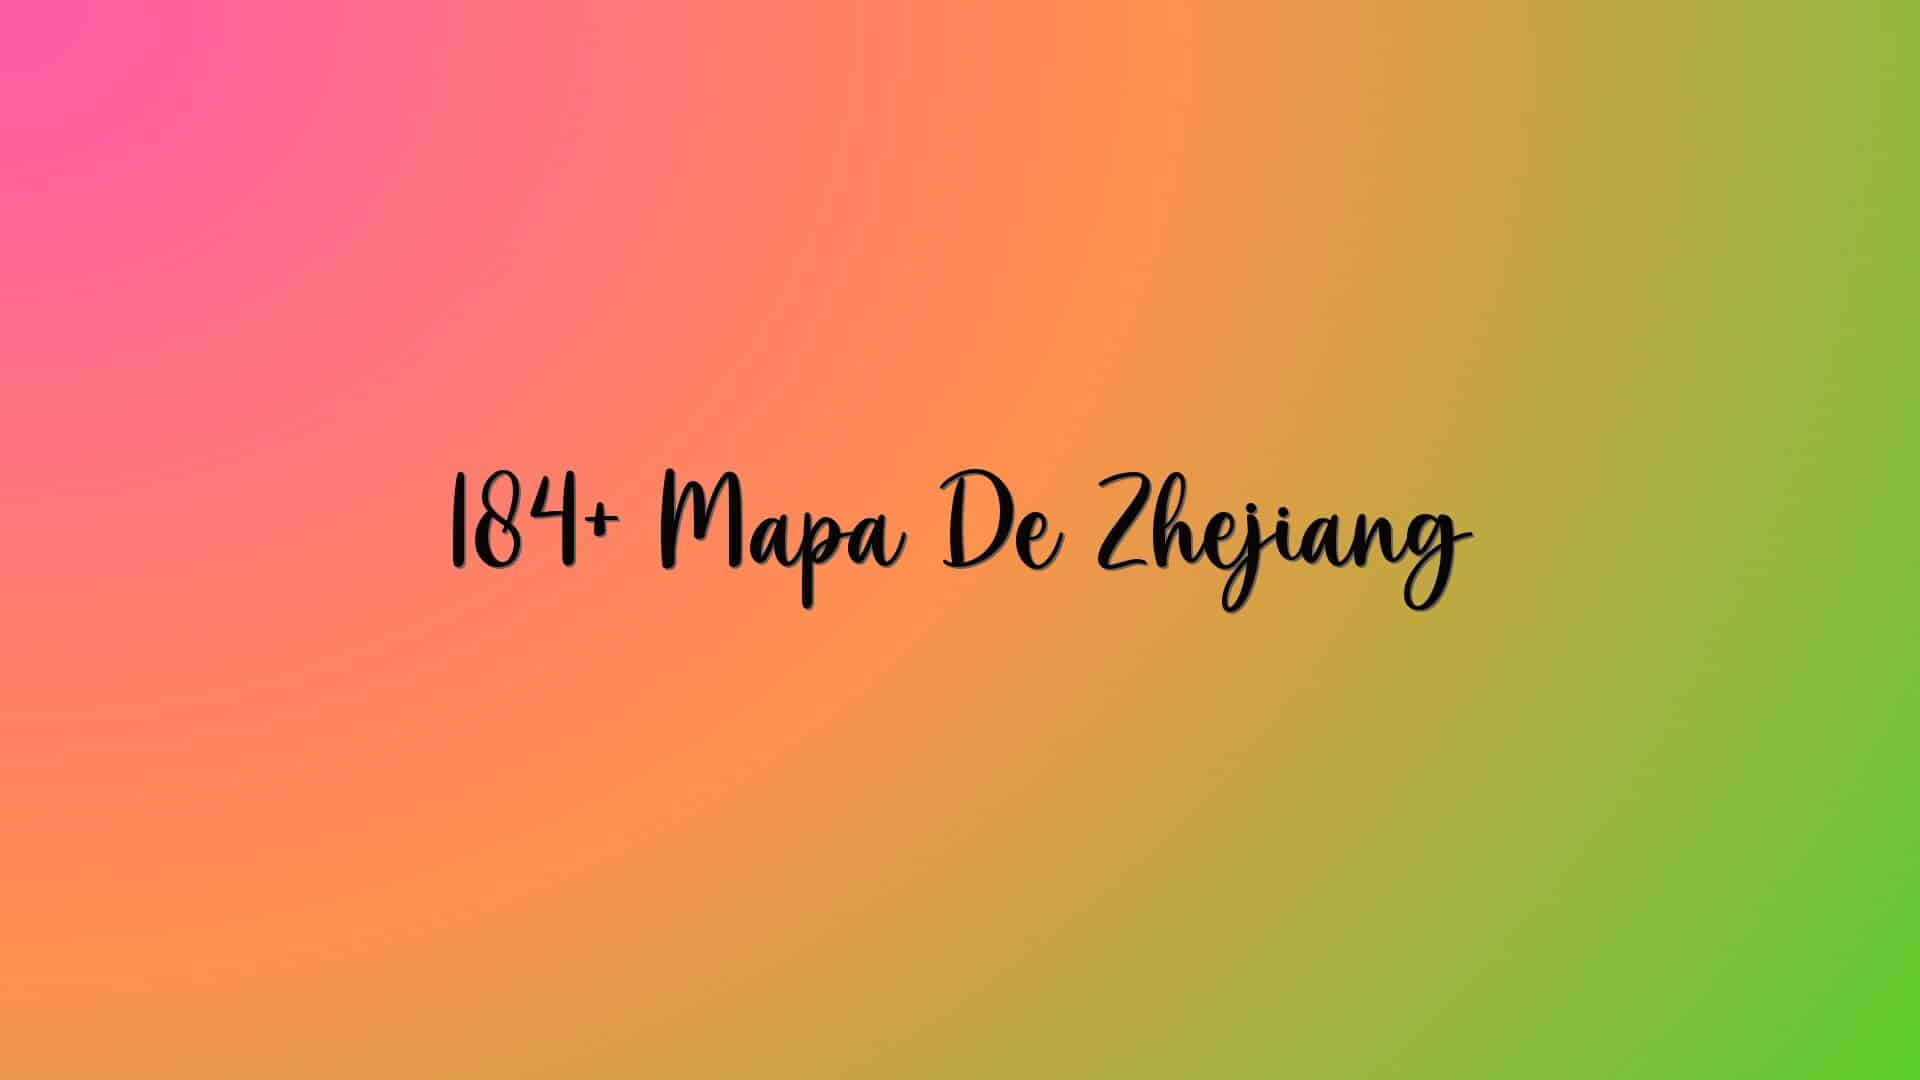 184+ Mapa De Zhejiang